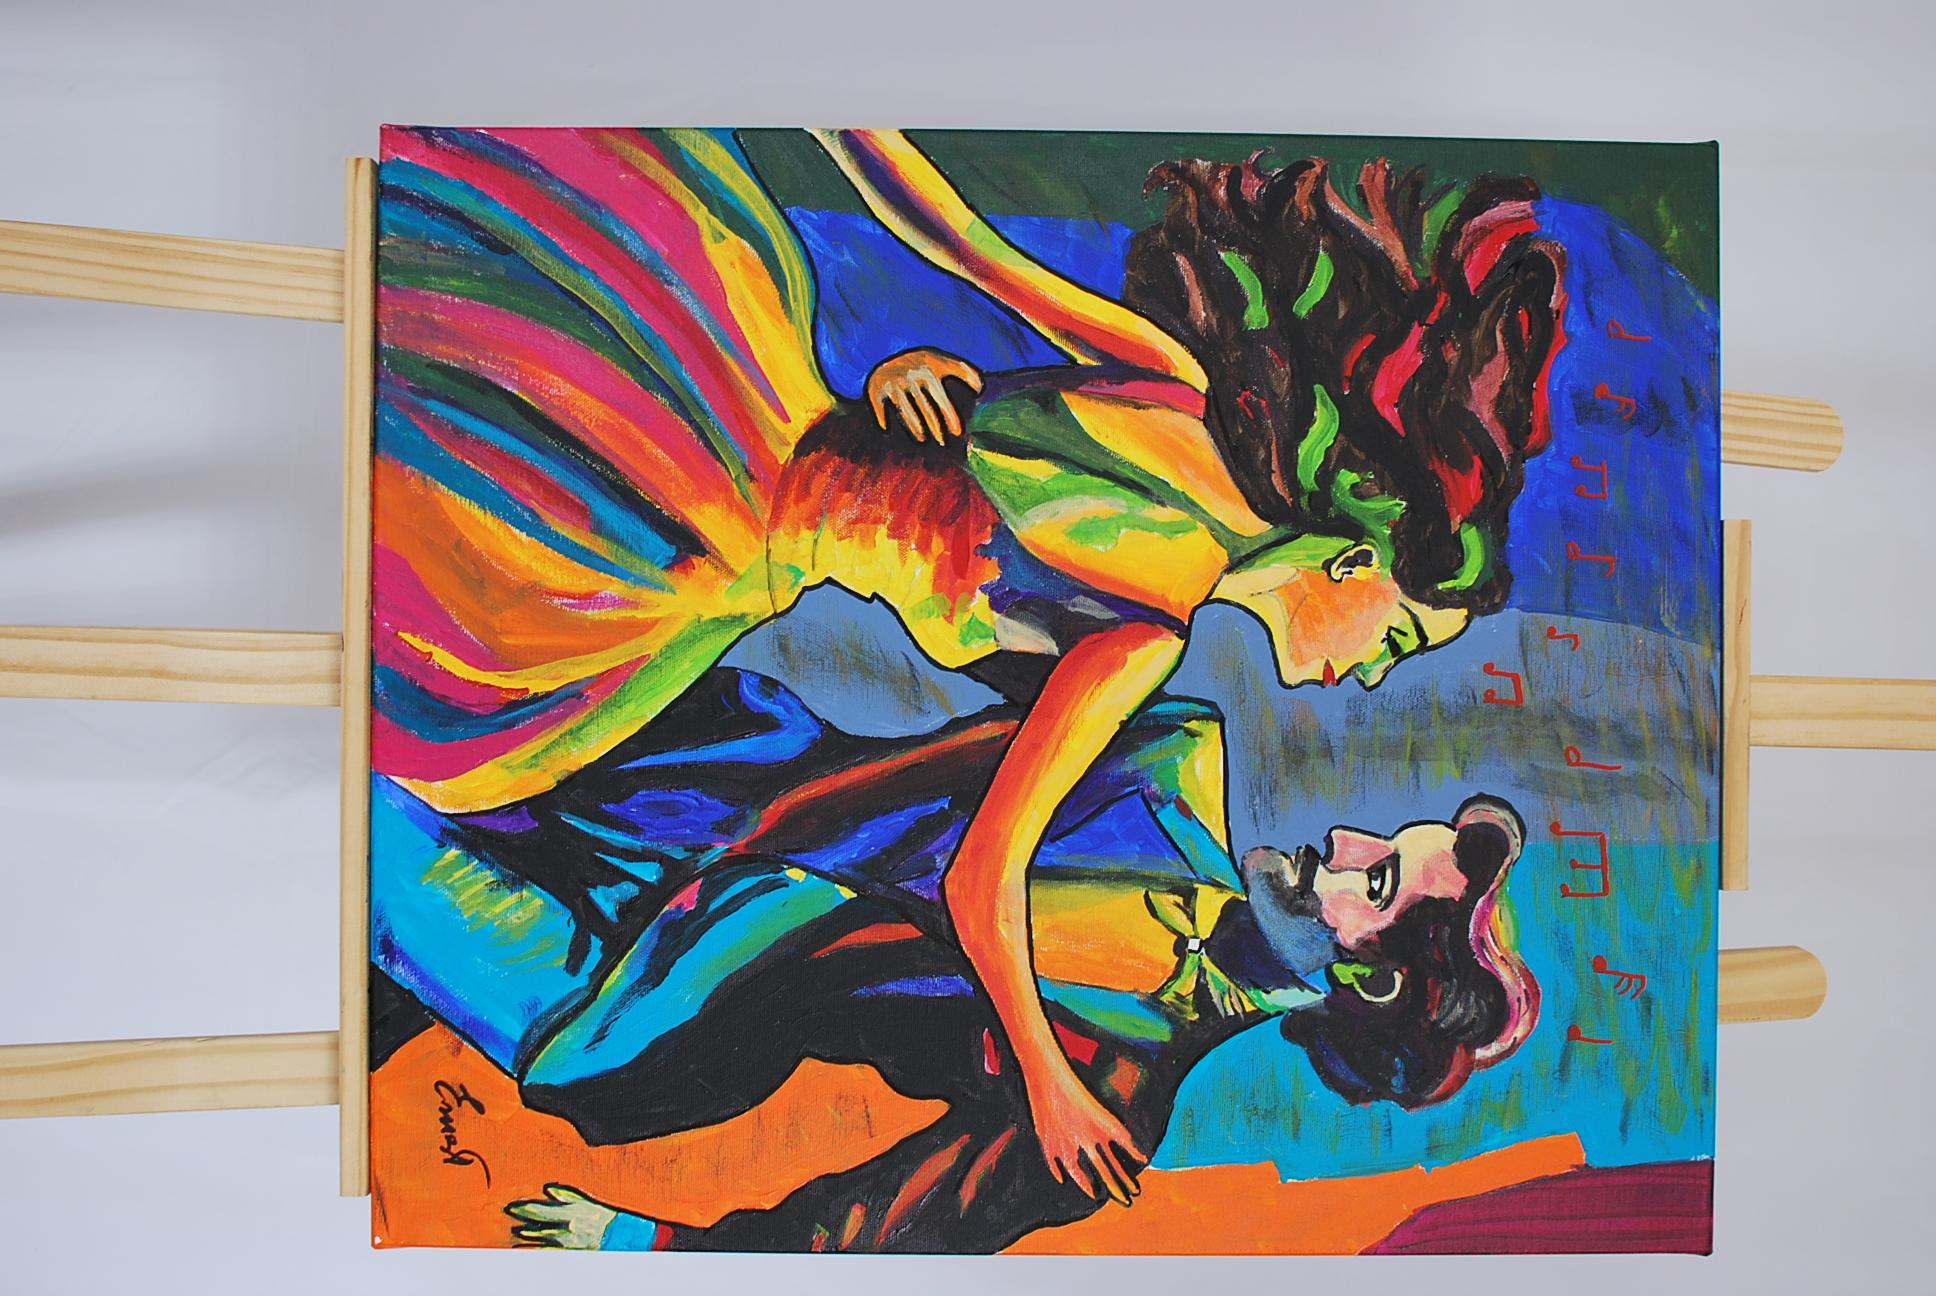 Bailando - Painting by Ernest Carneado Ferreri